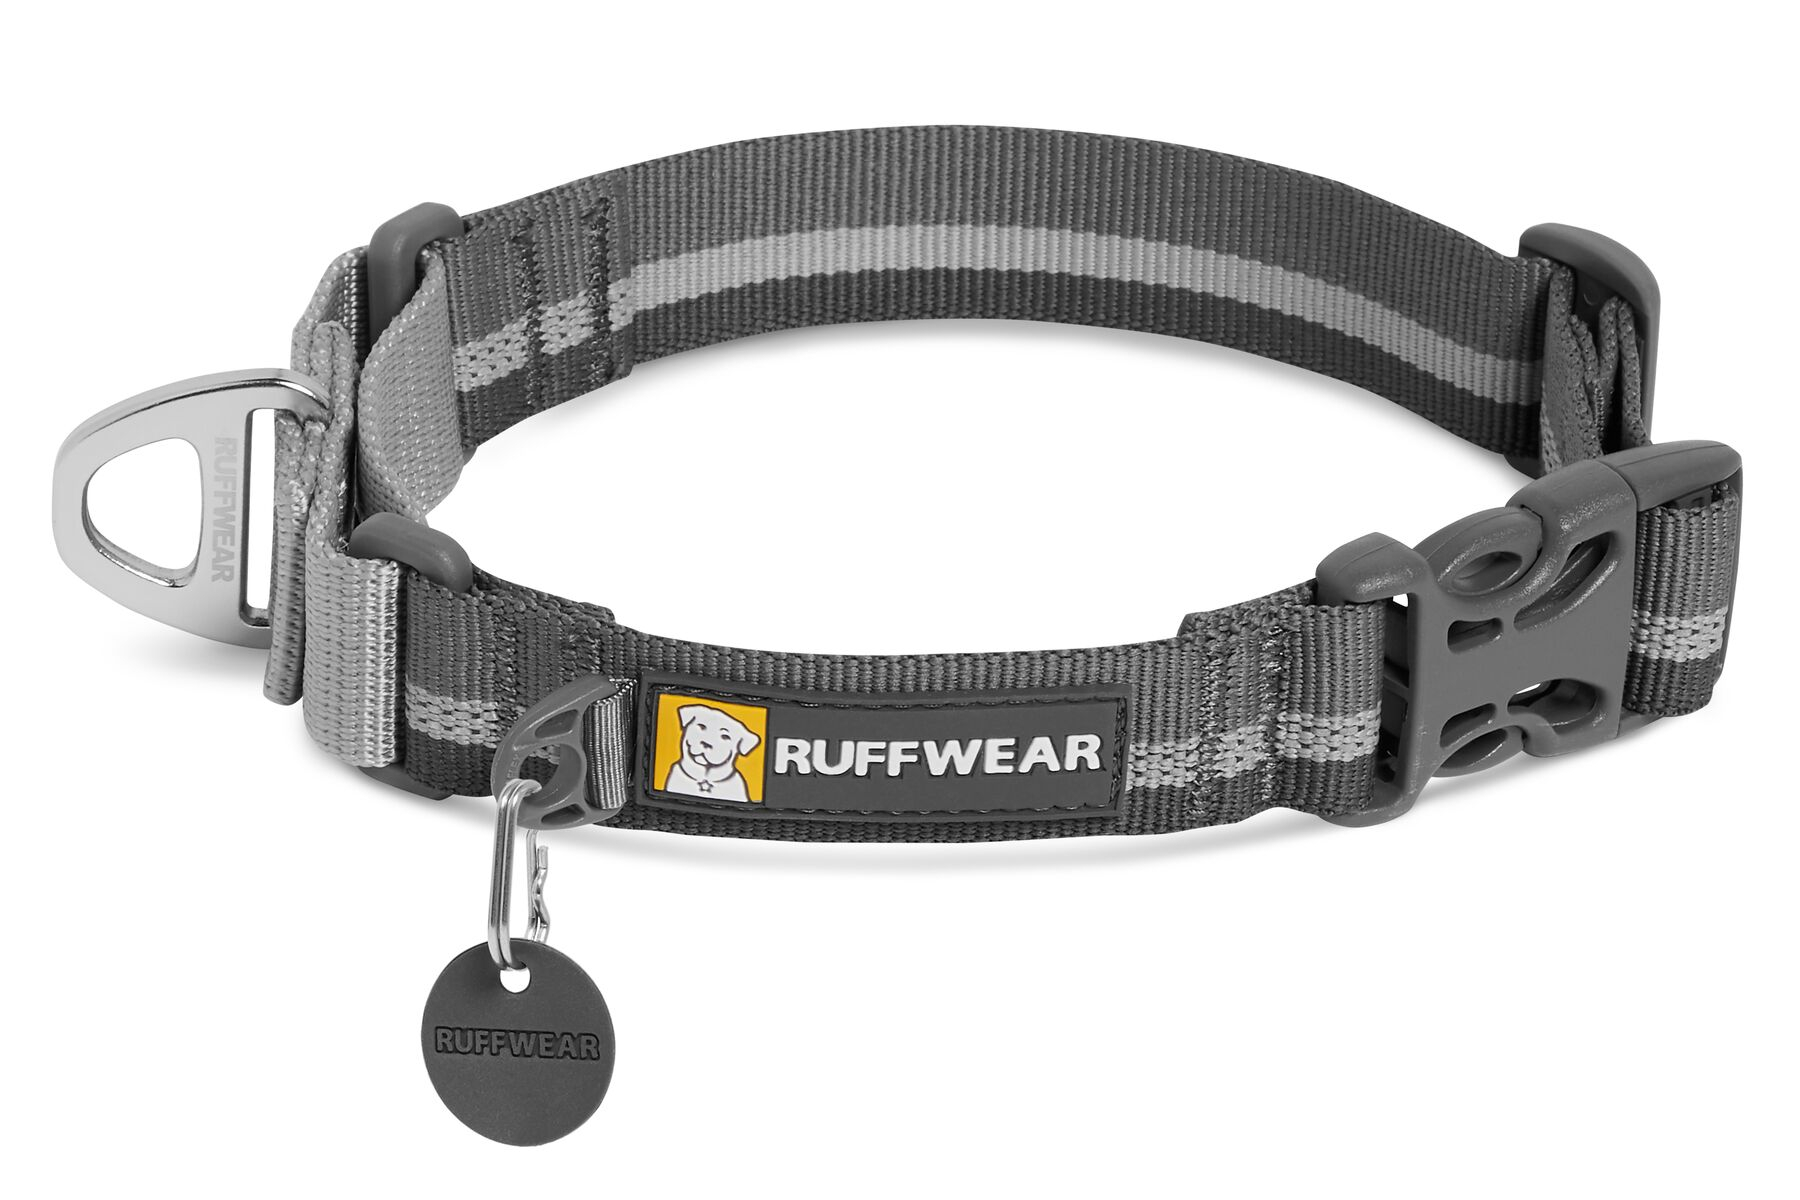 Collare Web Reaction di Ruffwear Granite Grey -diverse taglie disponibili